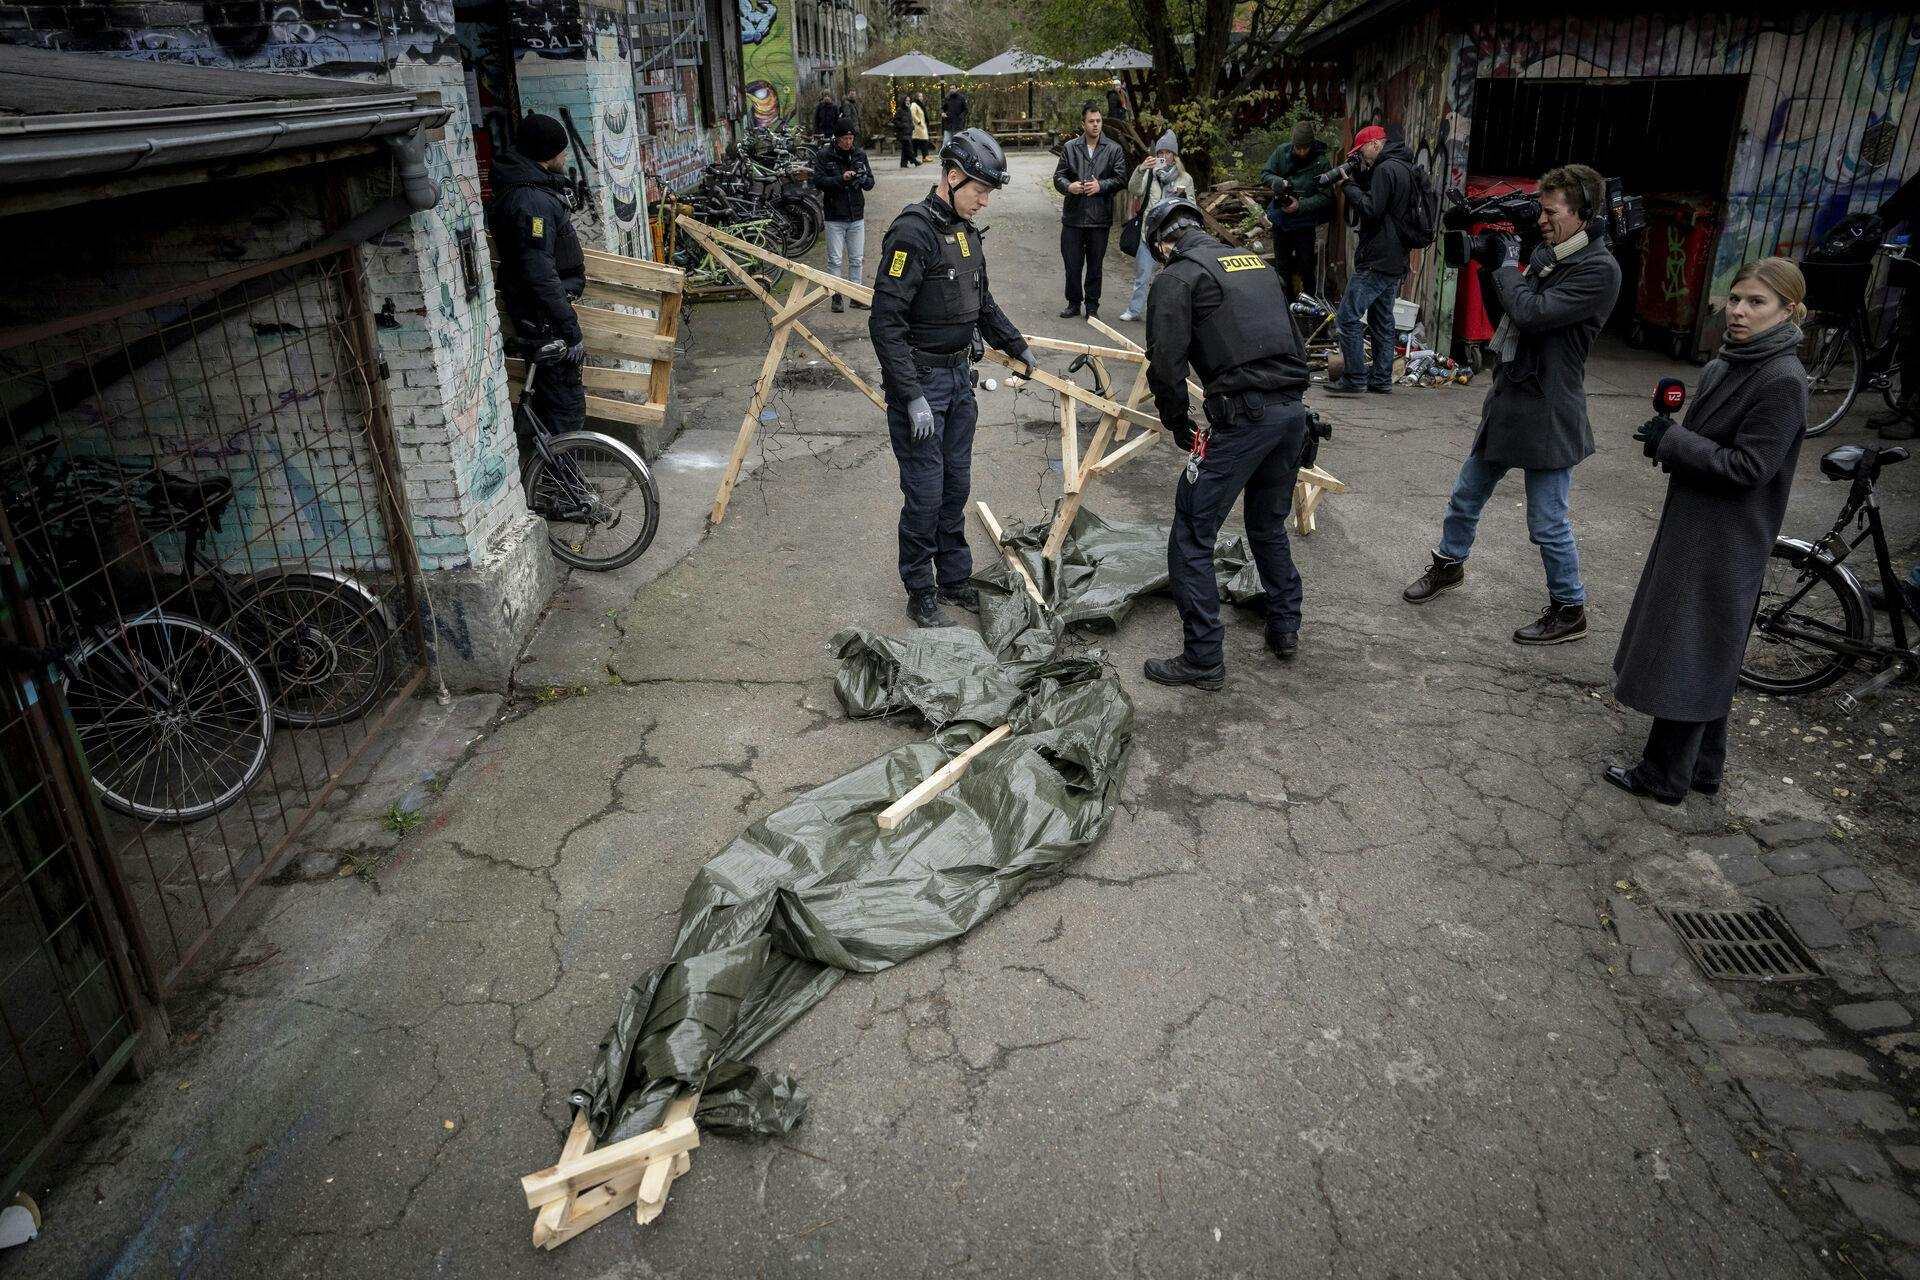 Politiet har - med pressen på slæb - gang på gang forsøgt at lukke pushernes gade på Christiania. Indtil videre uden held.